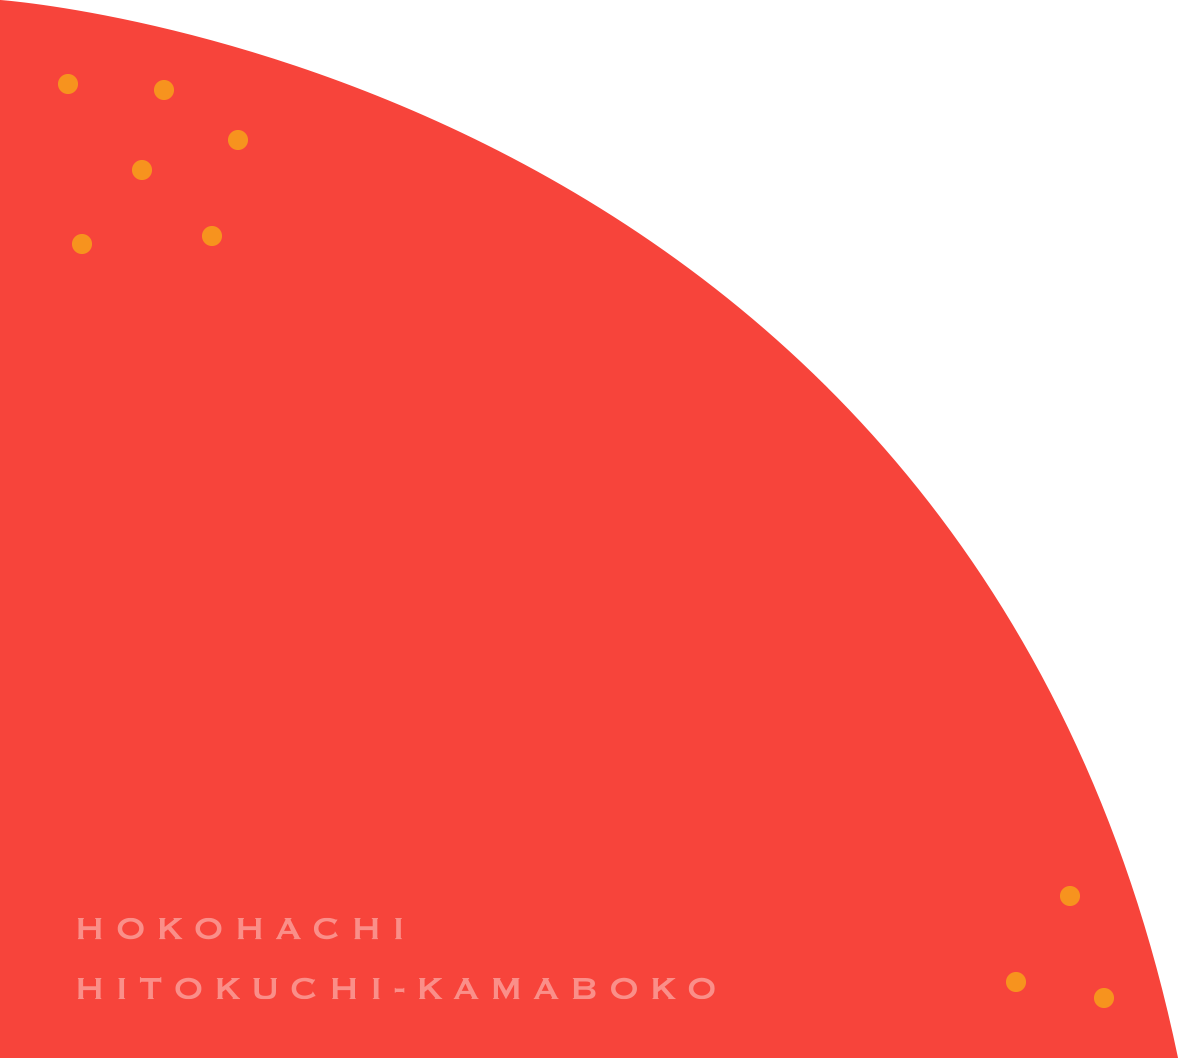 HOKOHACHI HITOKUCHI-KAMABOKO